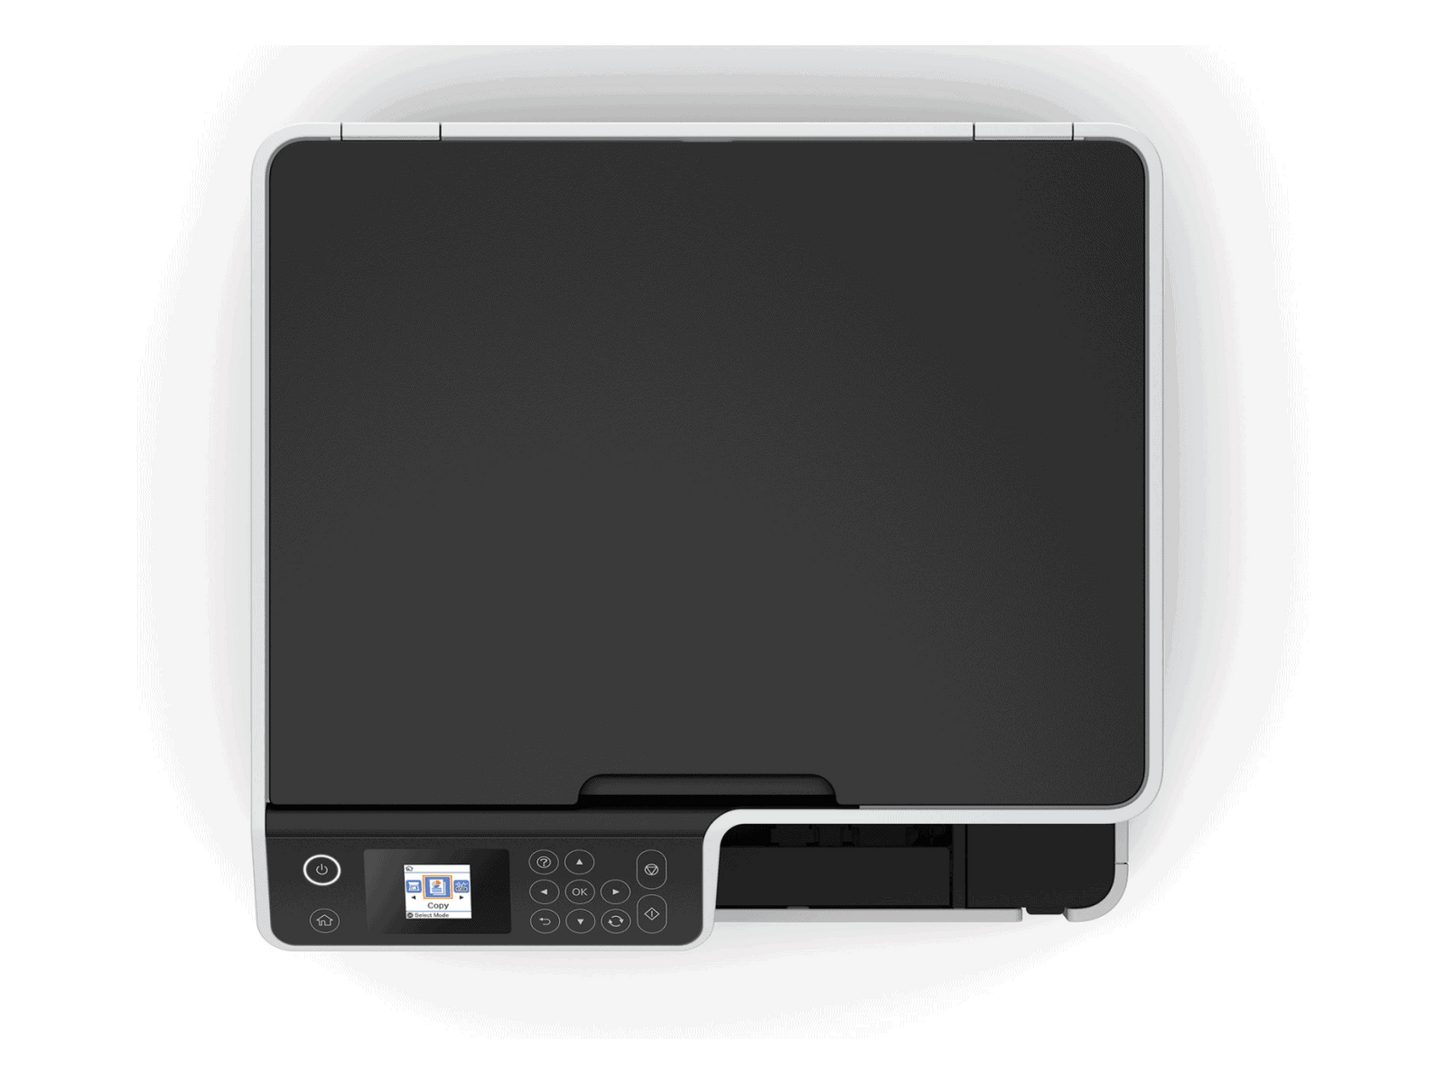 Epson Mono Ecotank M2170 3-in-1 Wi-Fi Printer